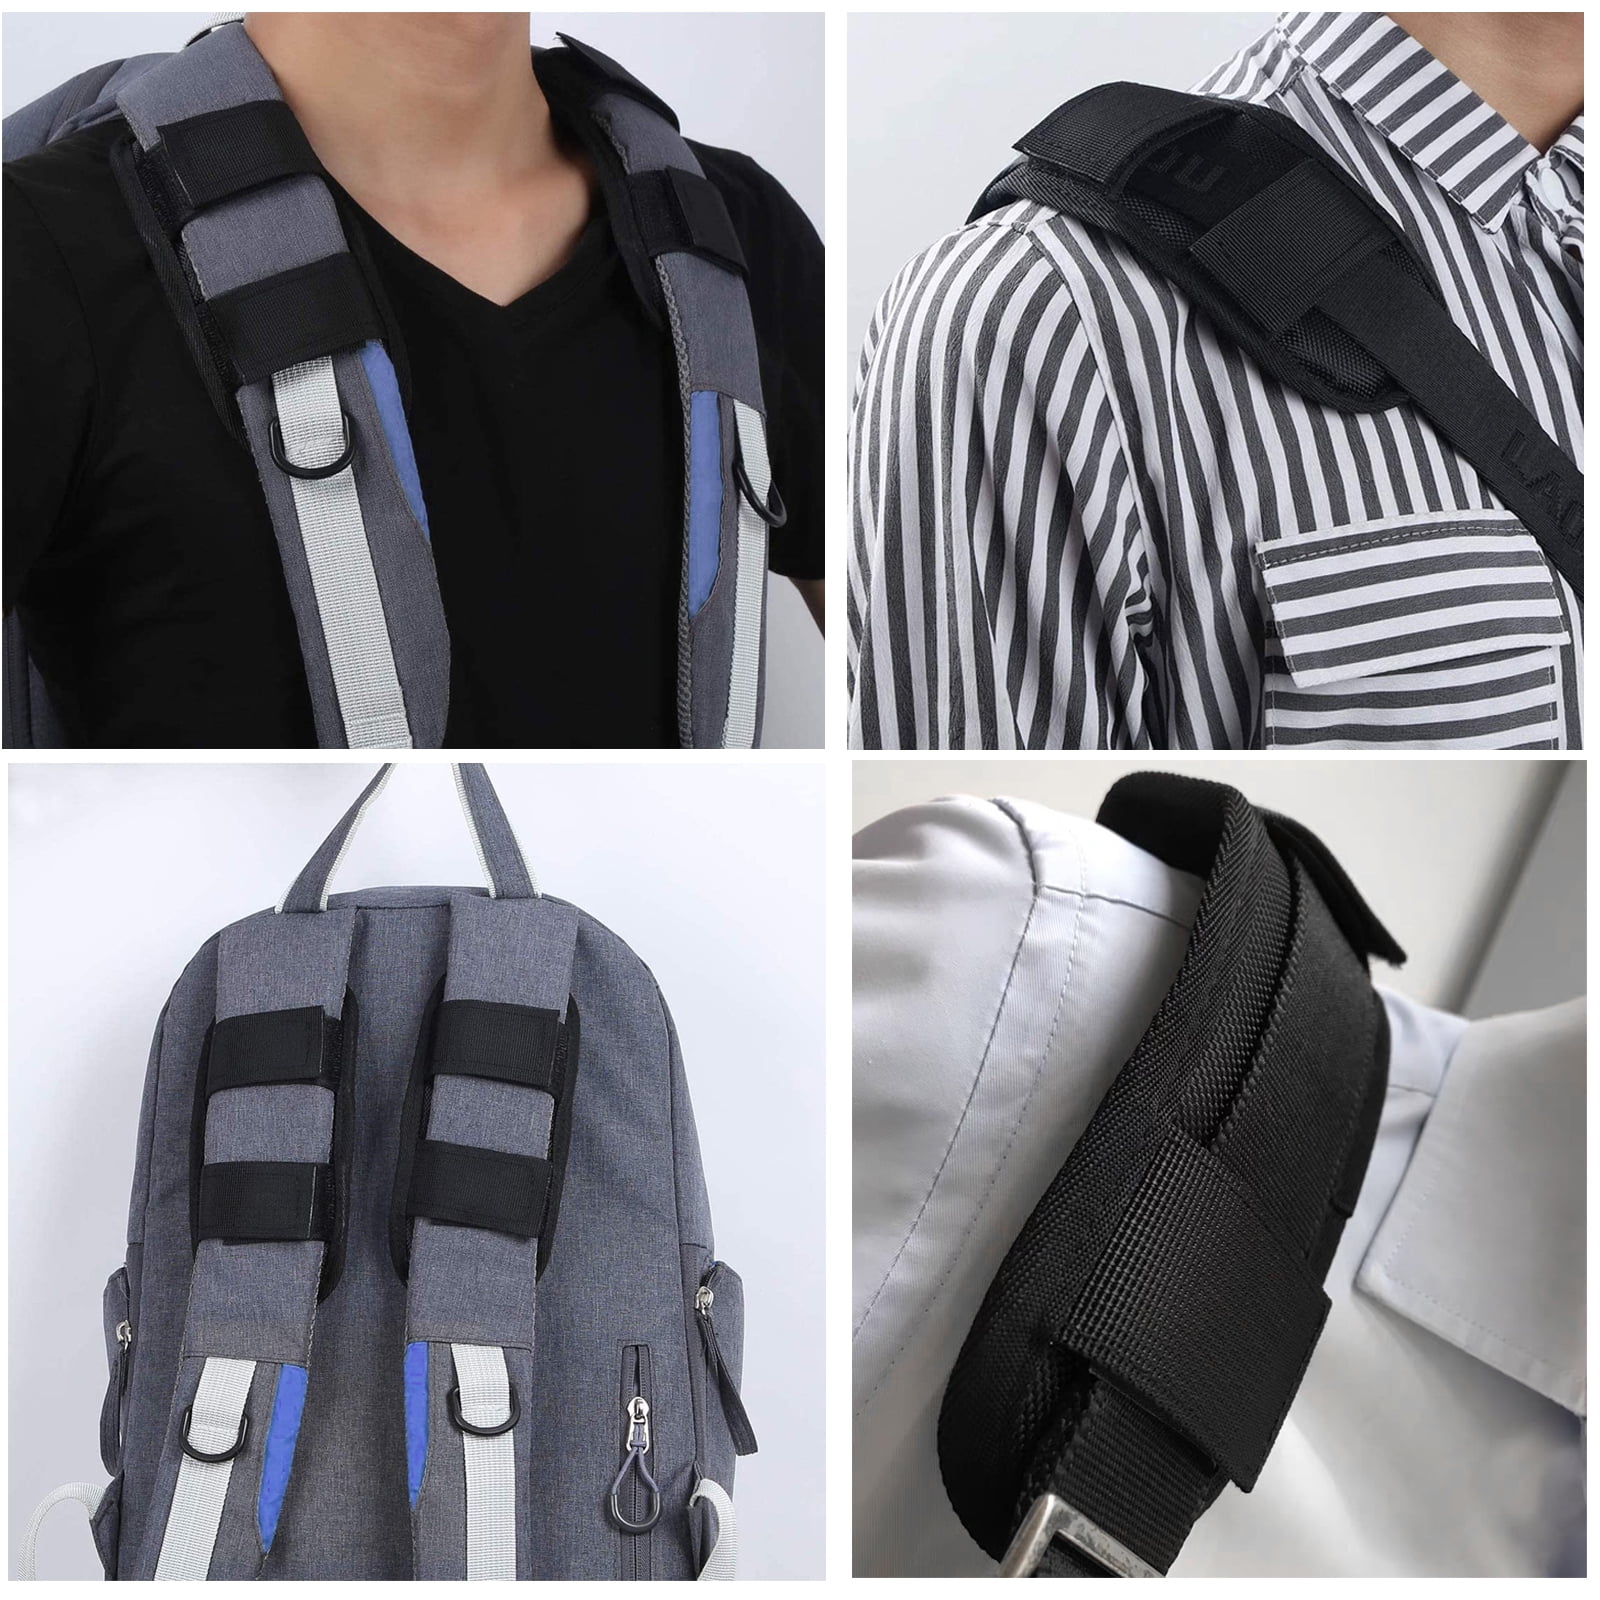 KEQKEV Detachable Shoulder Strap Pad Bag Shoulder Pad Rifle Sling Pad for  Backpack, Camera, Laptop, Messenger, Guitar (2 Pack)